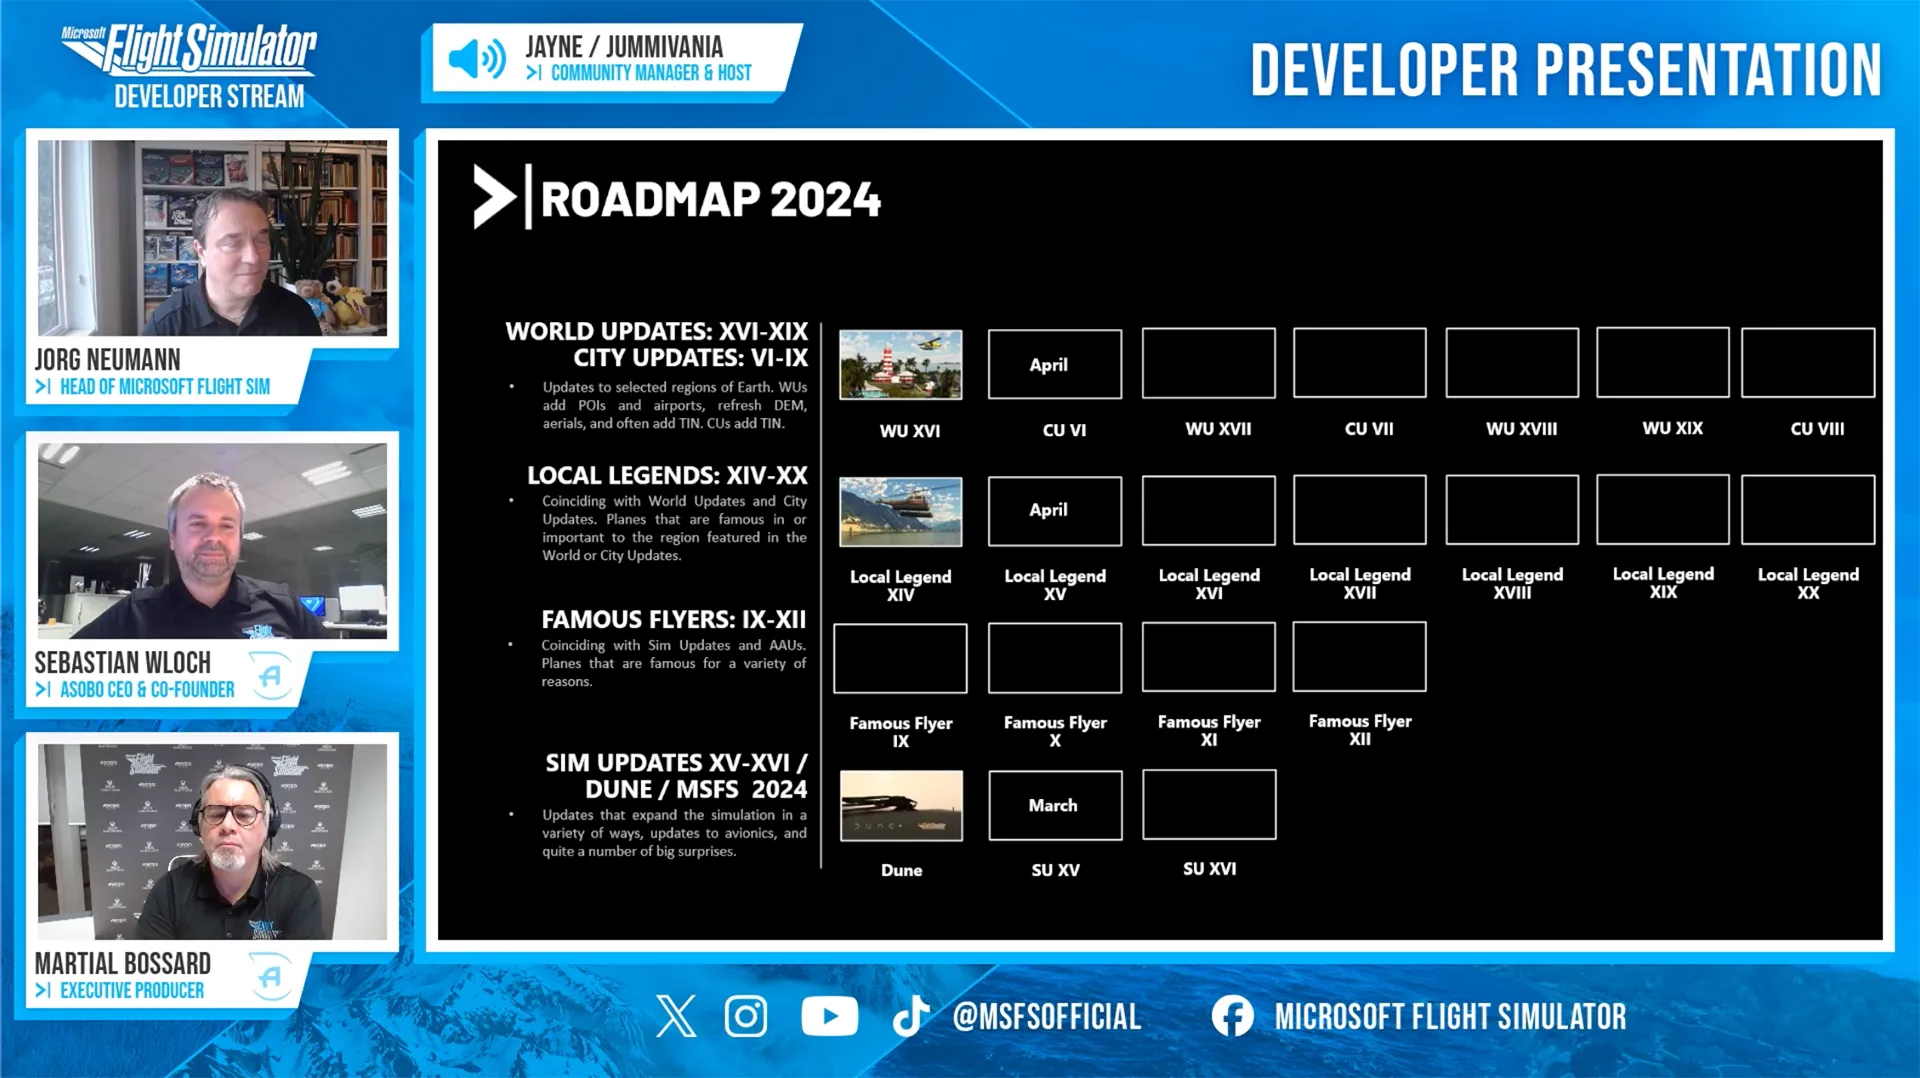 msfs 2020 roadmap 2024